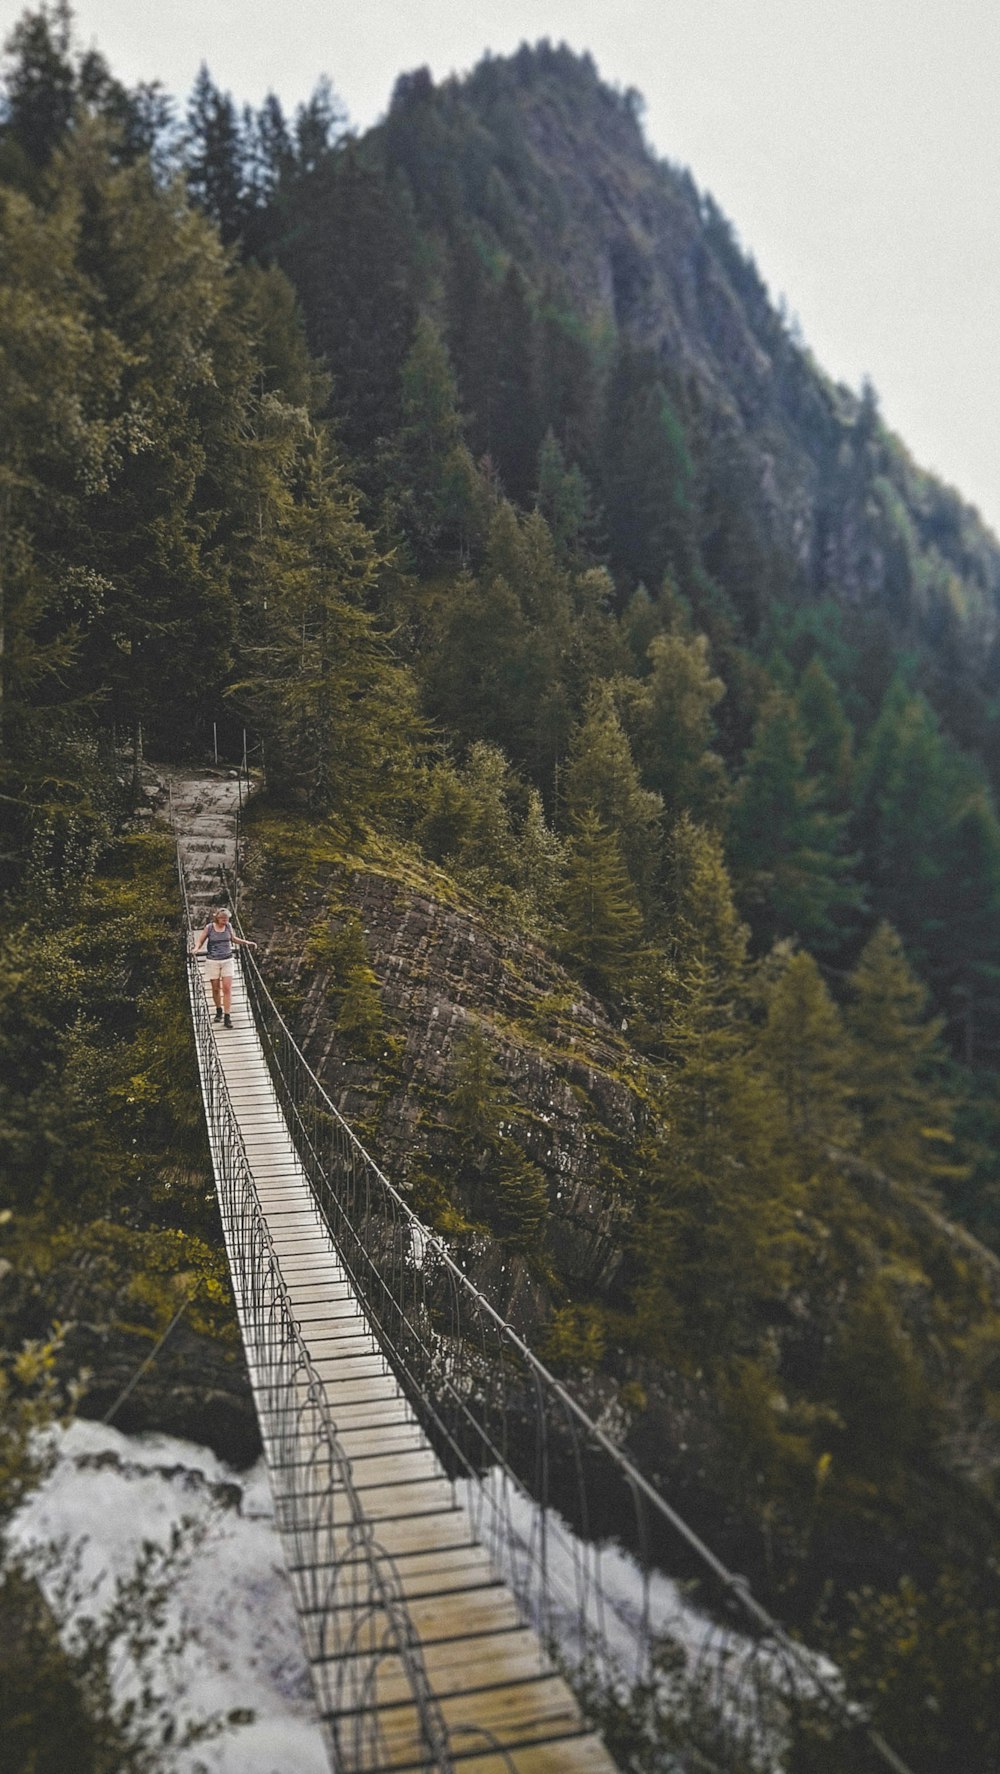 foto da ponte de madeira cercada por árvores altas de folhas verdes